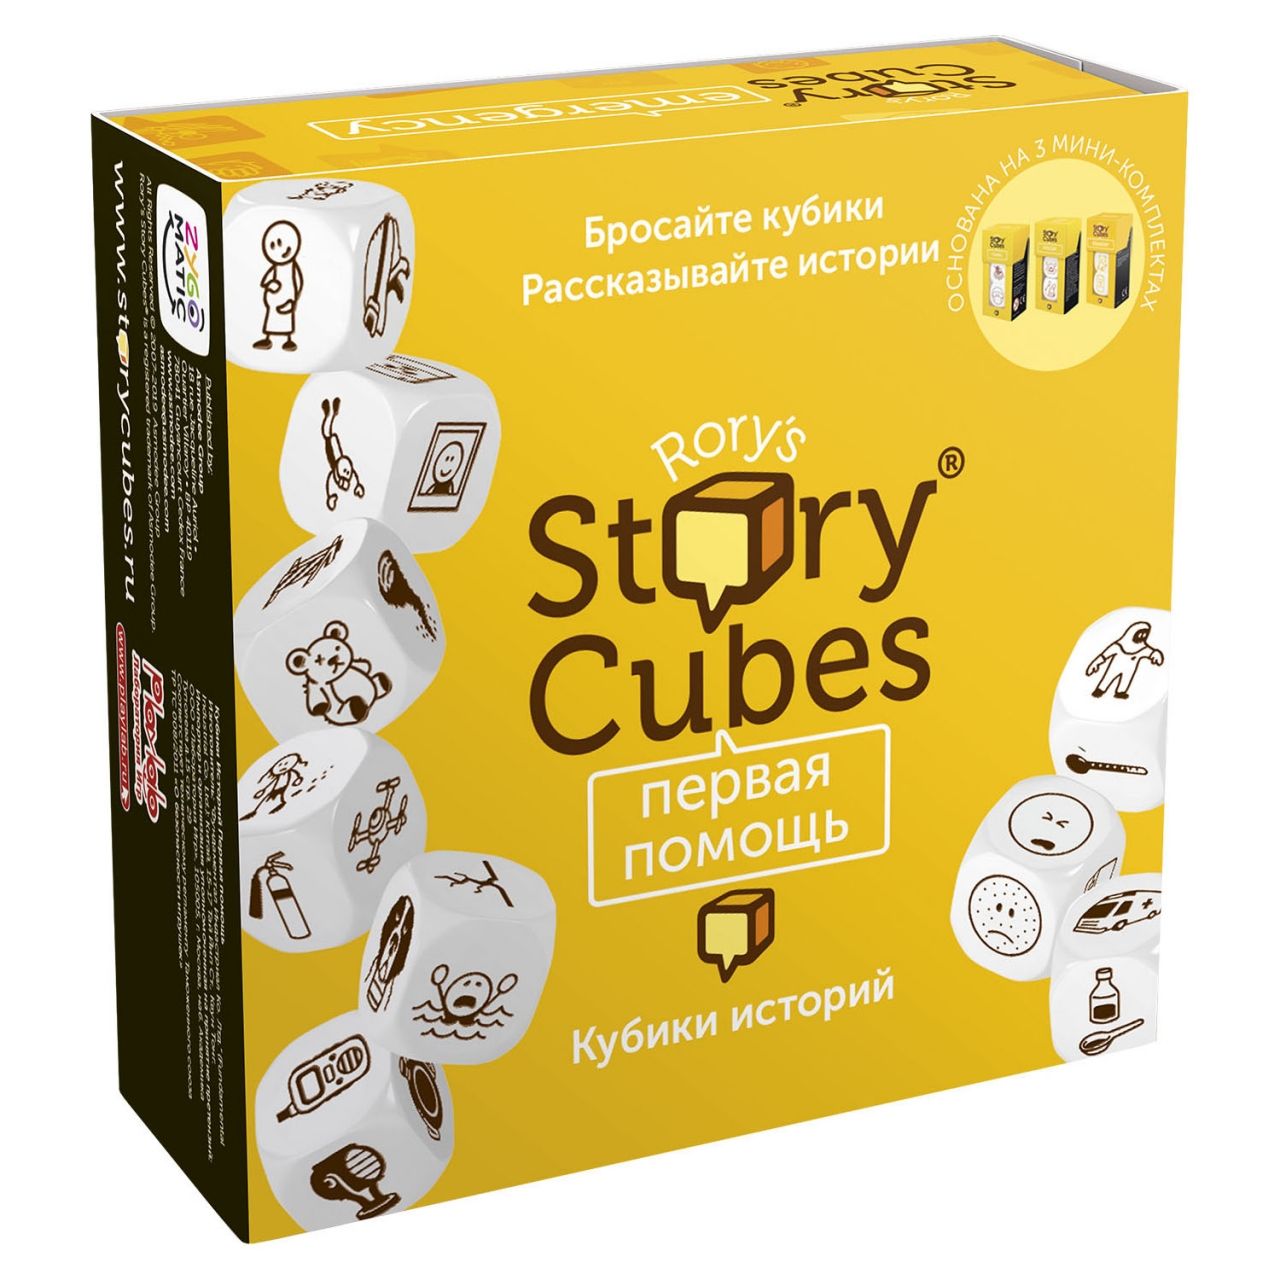 Настольная игра RORYS STORY CUBES RSC32 кубики историй Первая помощь rubiks кубики историй путешествия